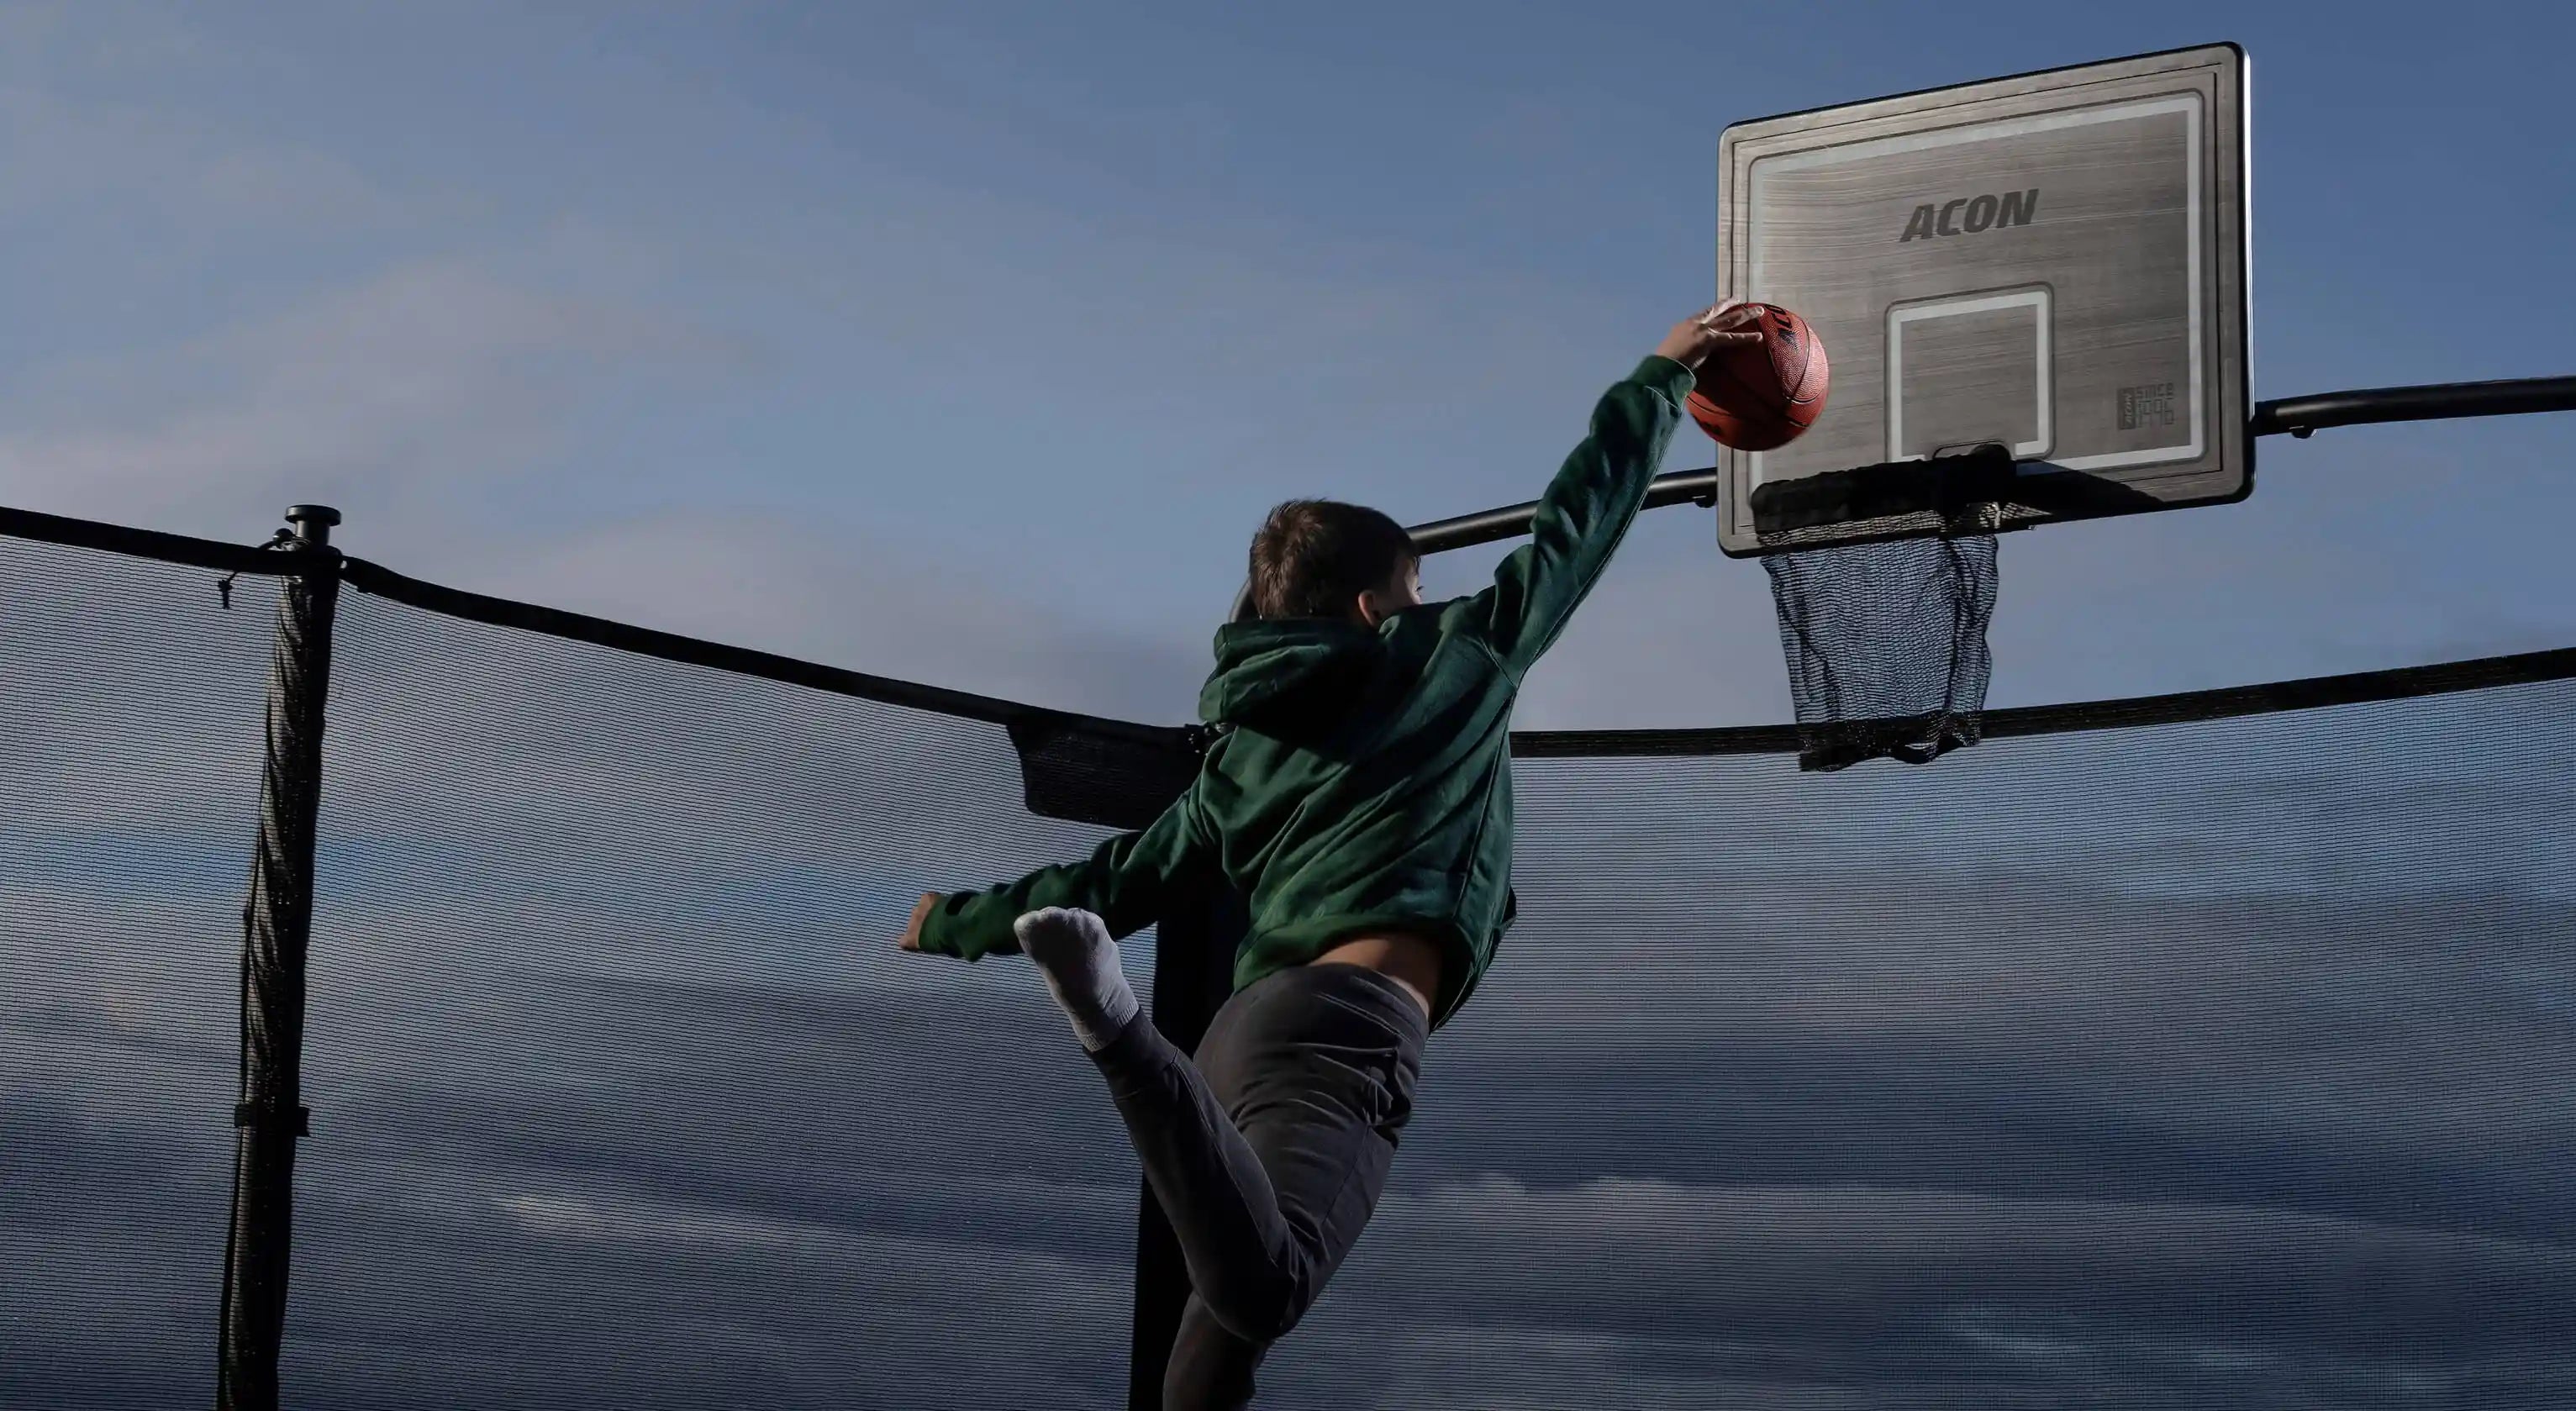 En pojke kastar en basketboll i studsmattans basketkorg.